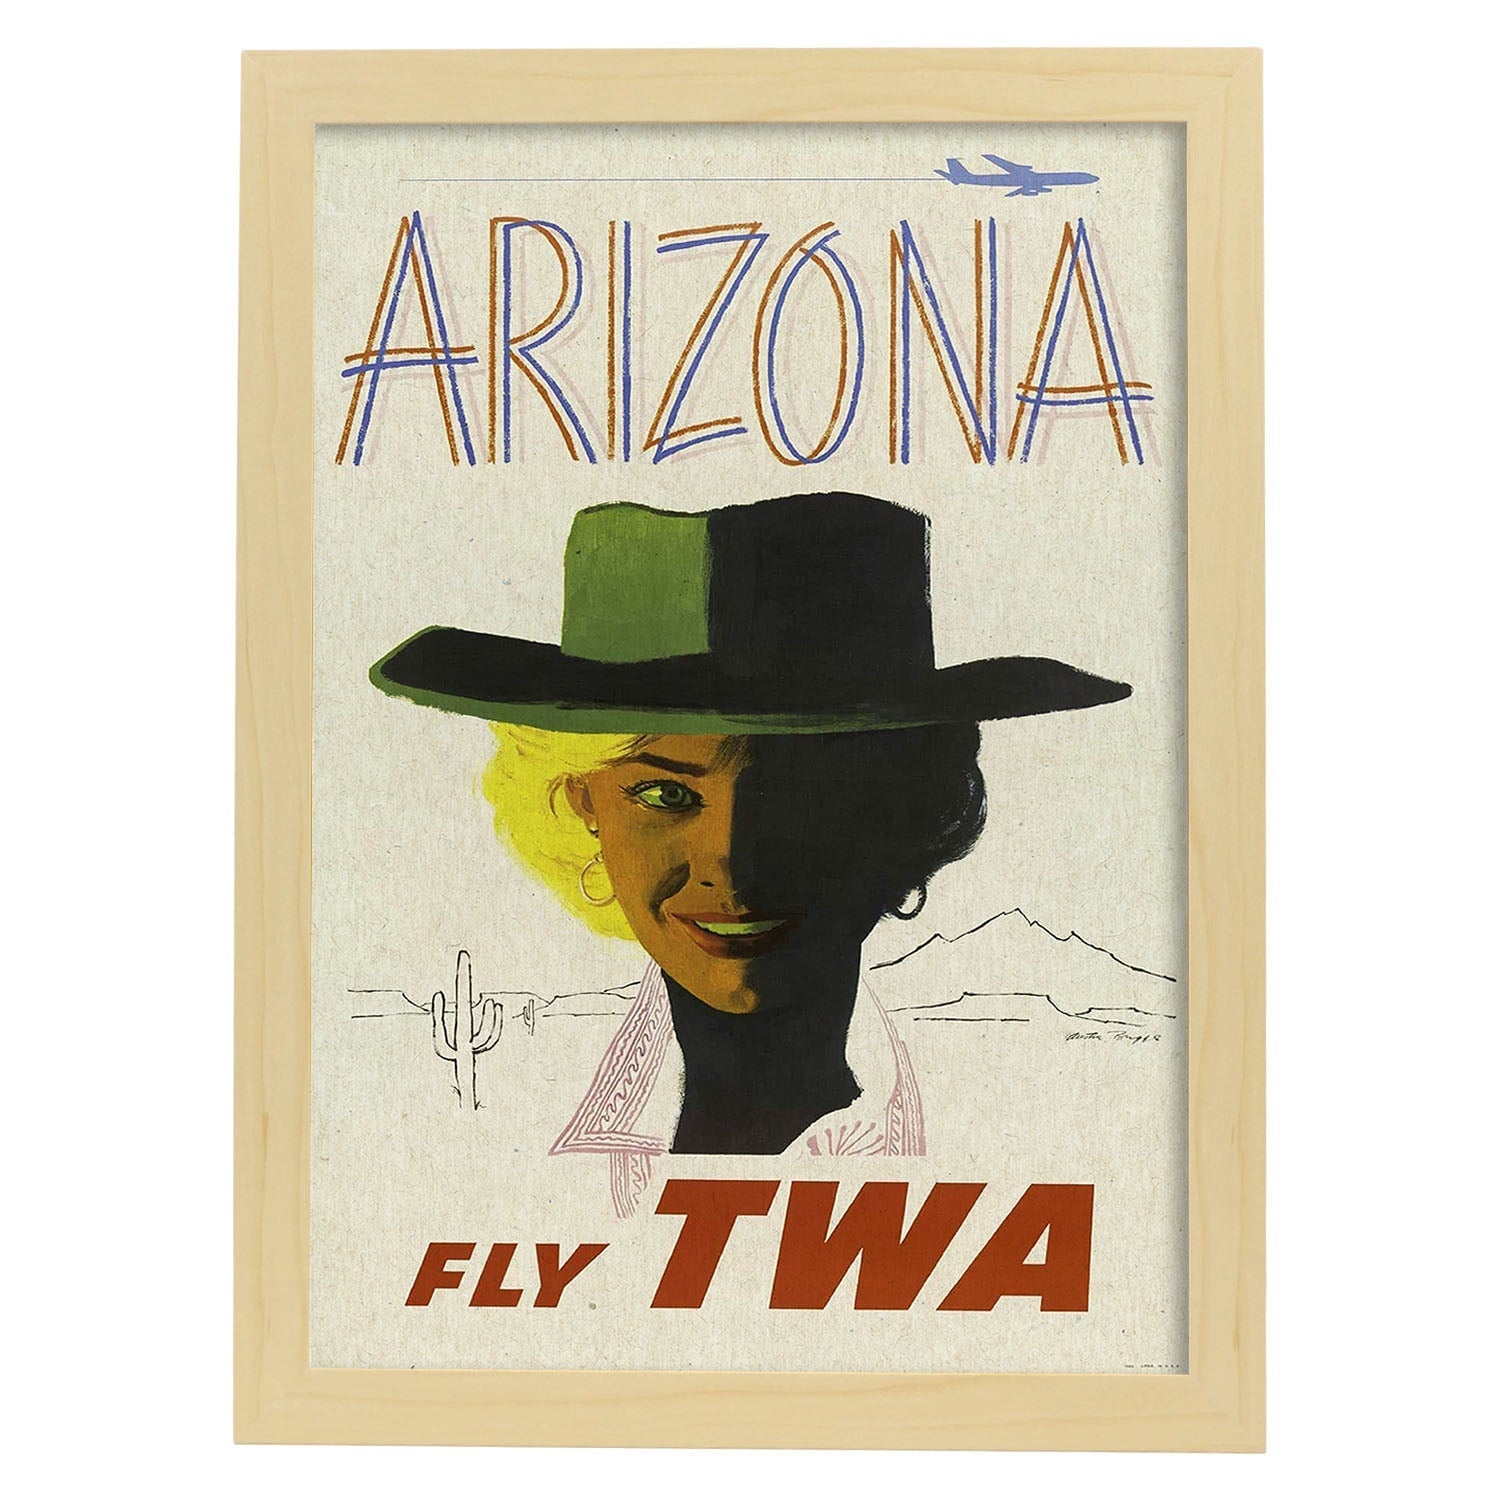 Poster Vintage. Cartel Vintage de América. Arizona.-Artwork-Nacnic-A3-Marco Madera clara-Nacnic Estudio SL